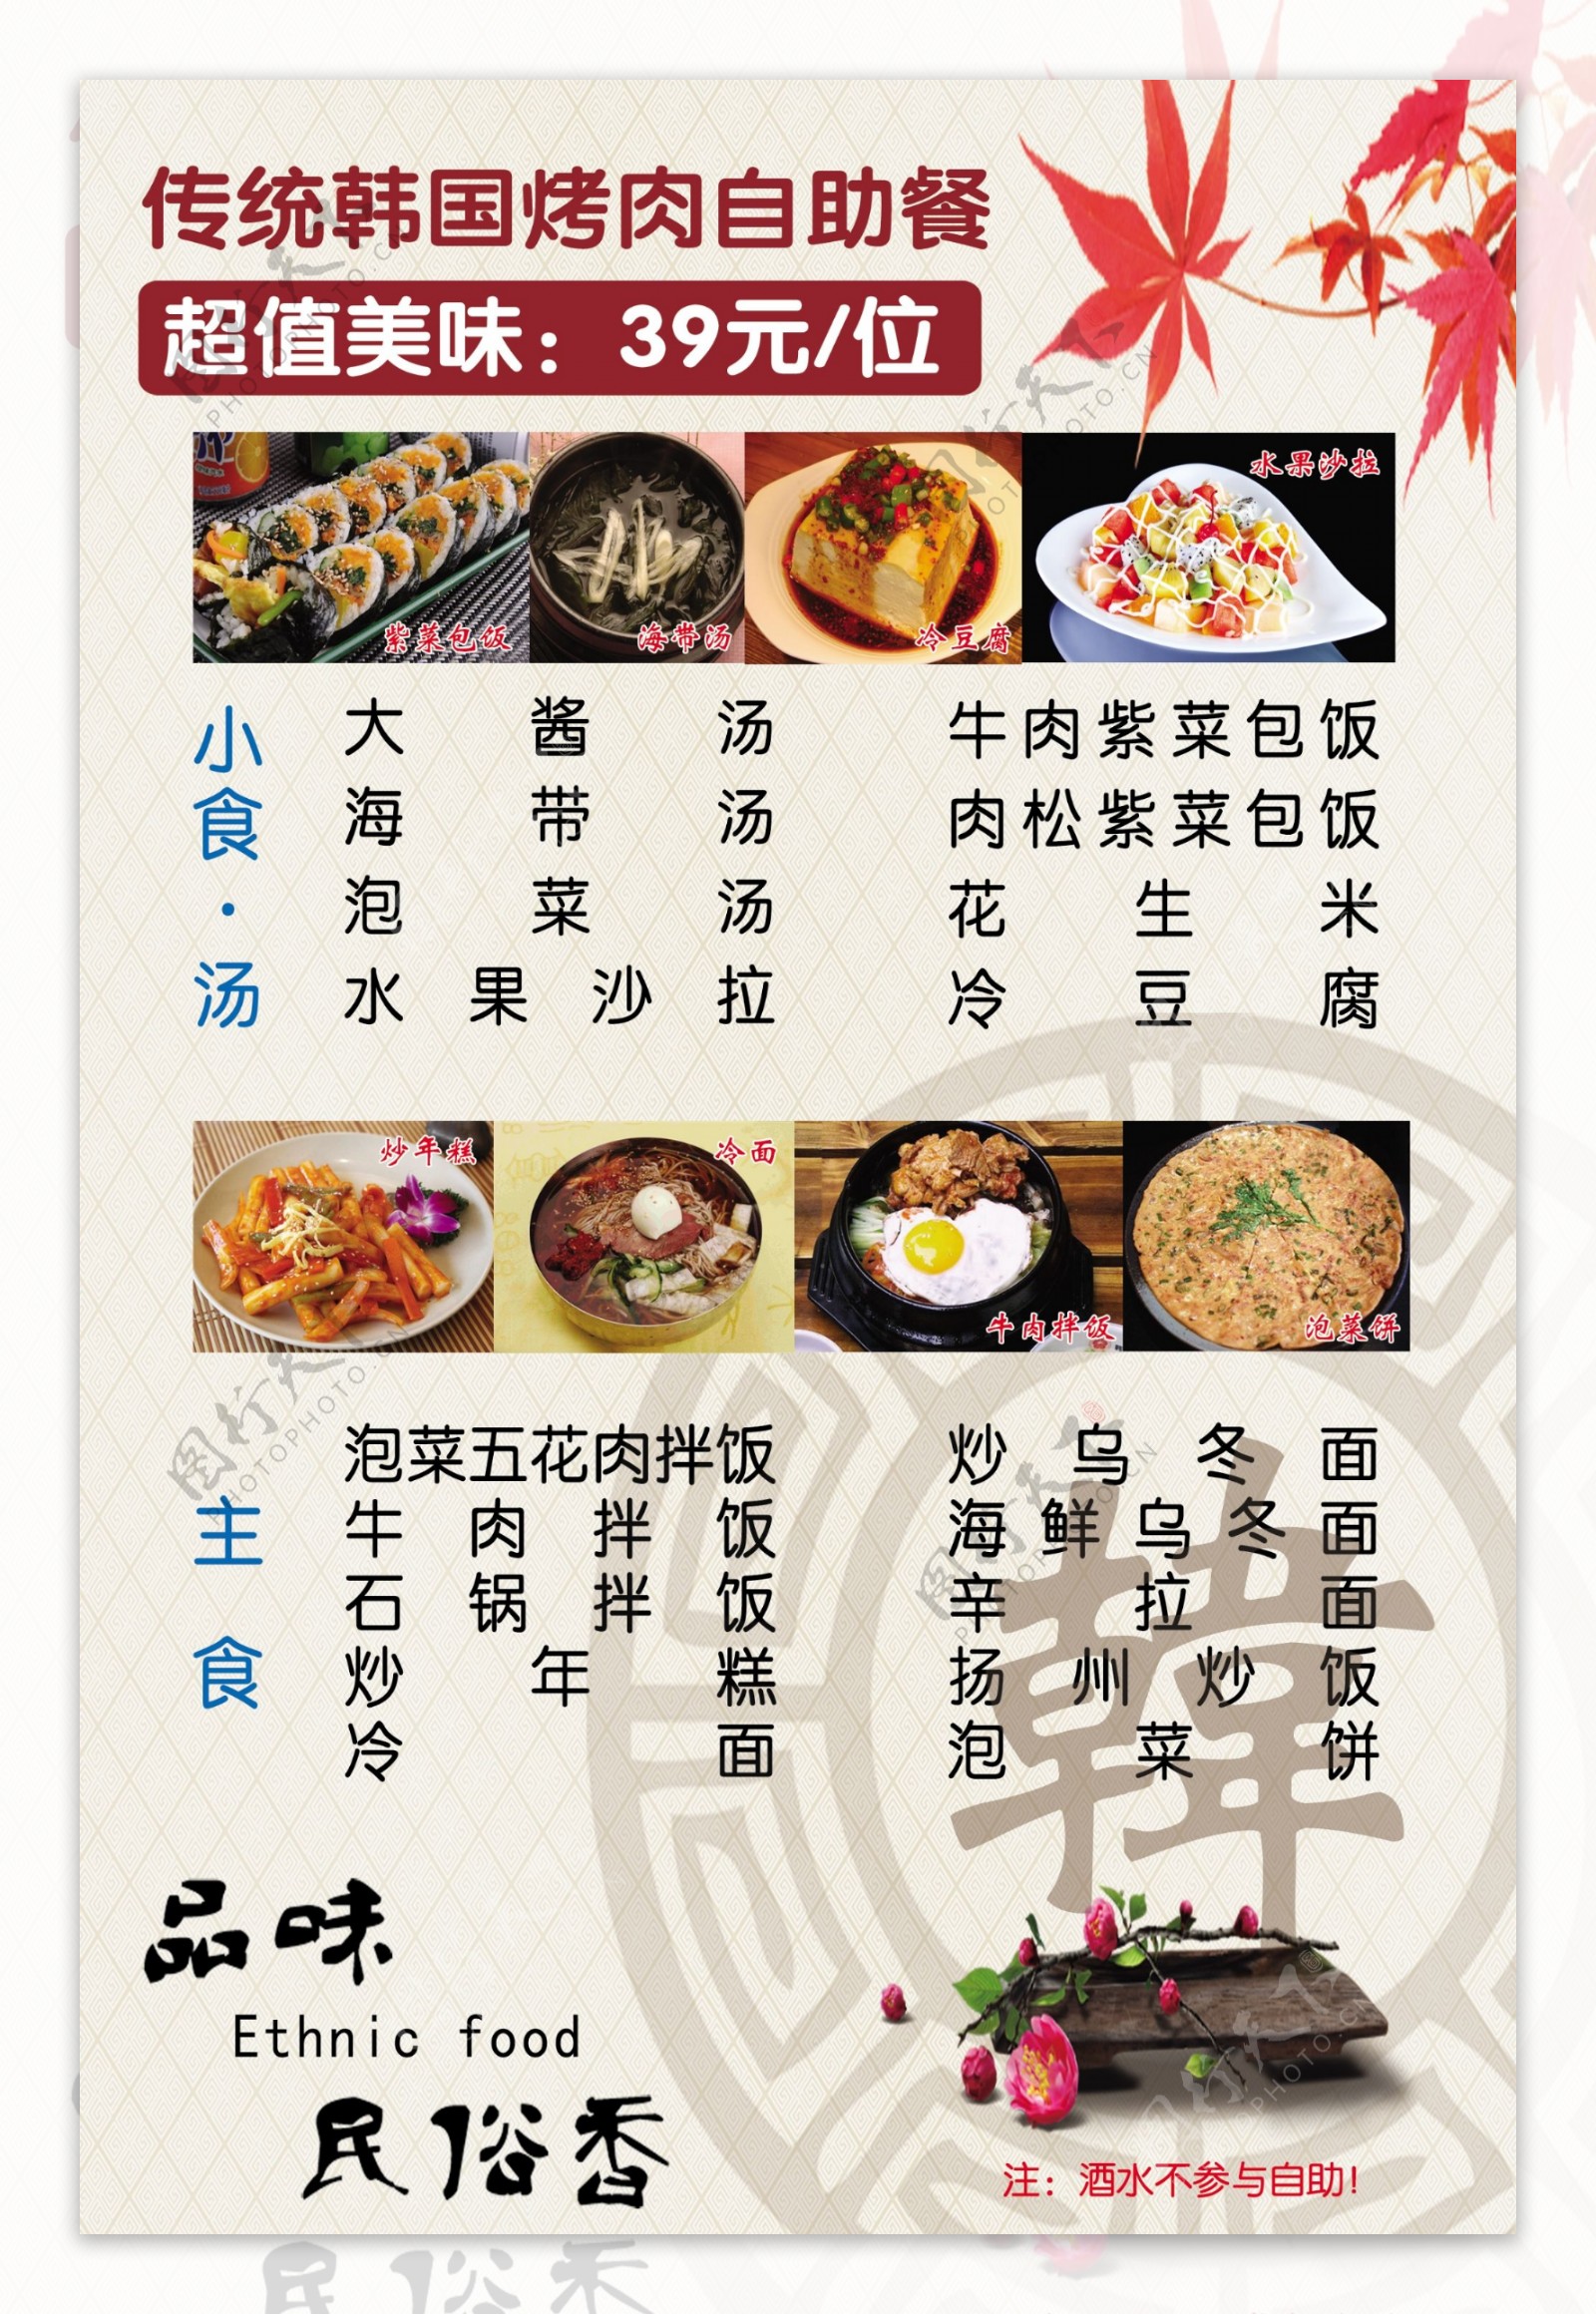 韩国料理菜单